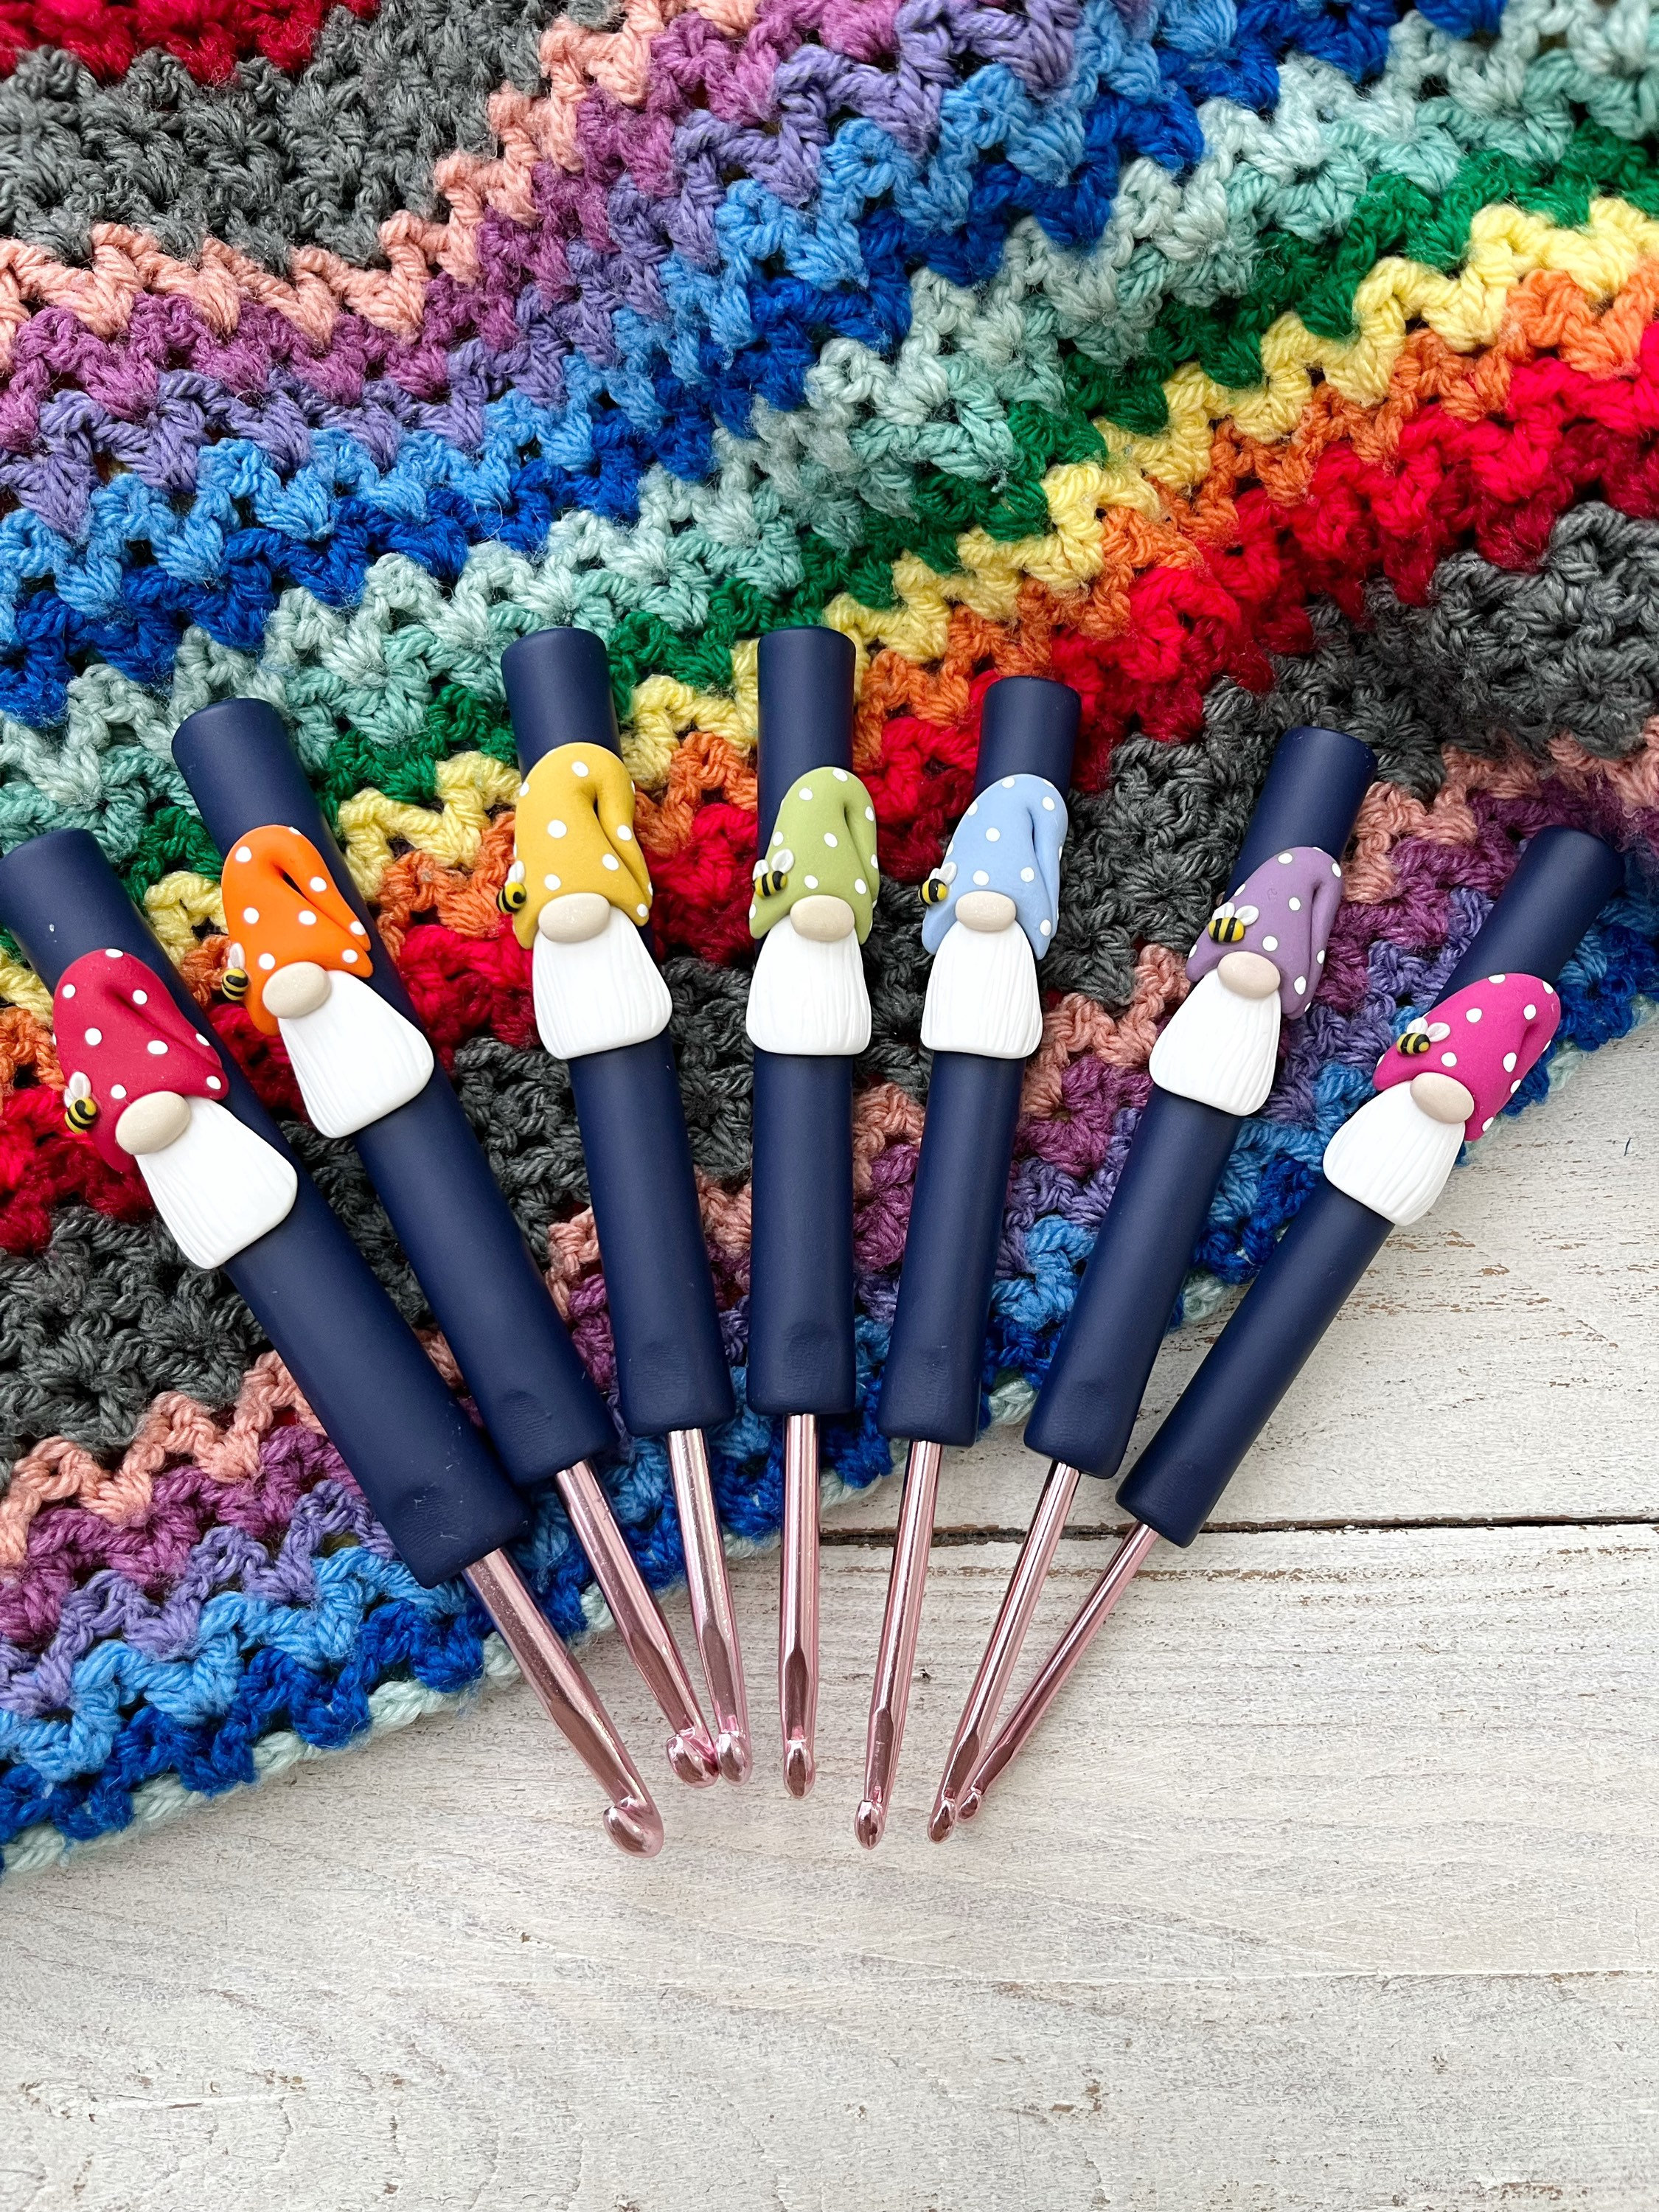 Jumbo Crochet Hook Set Includes 7 Hook Sizes-20mm, 15mm, 12mm, 10mm, 9mm,  8mm, 7mm, Tapered Crochet Hooks, Crocheting, Hooks for Kids 